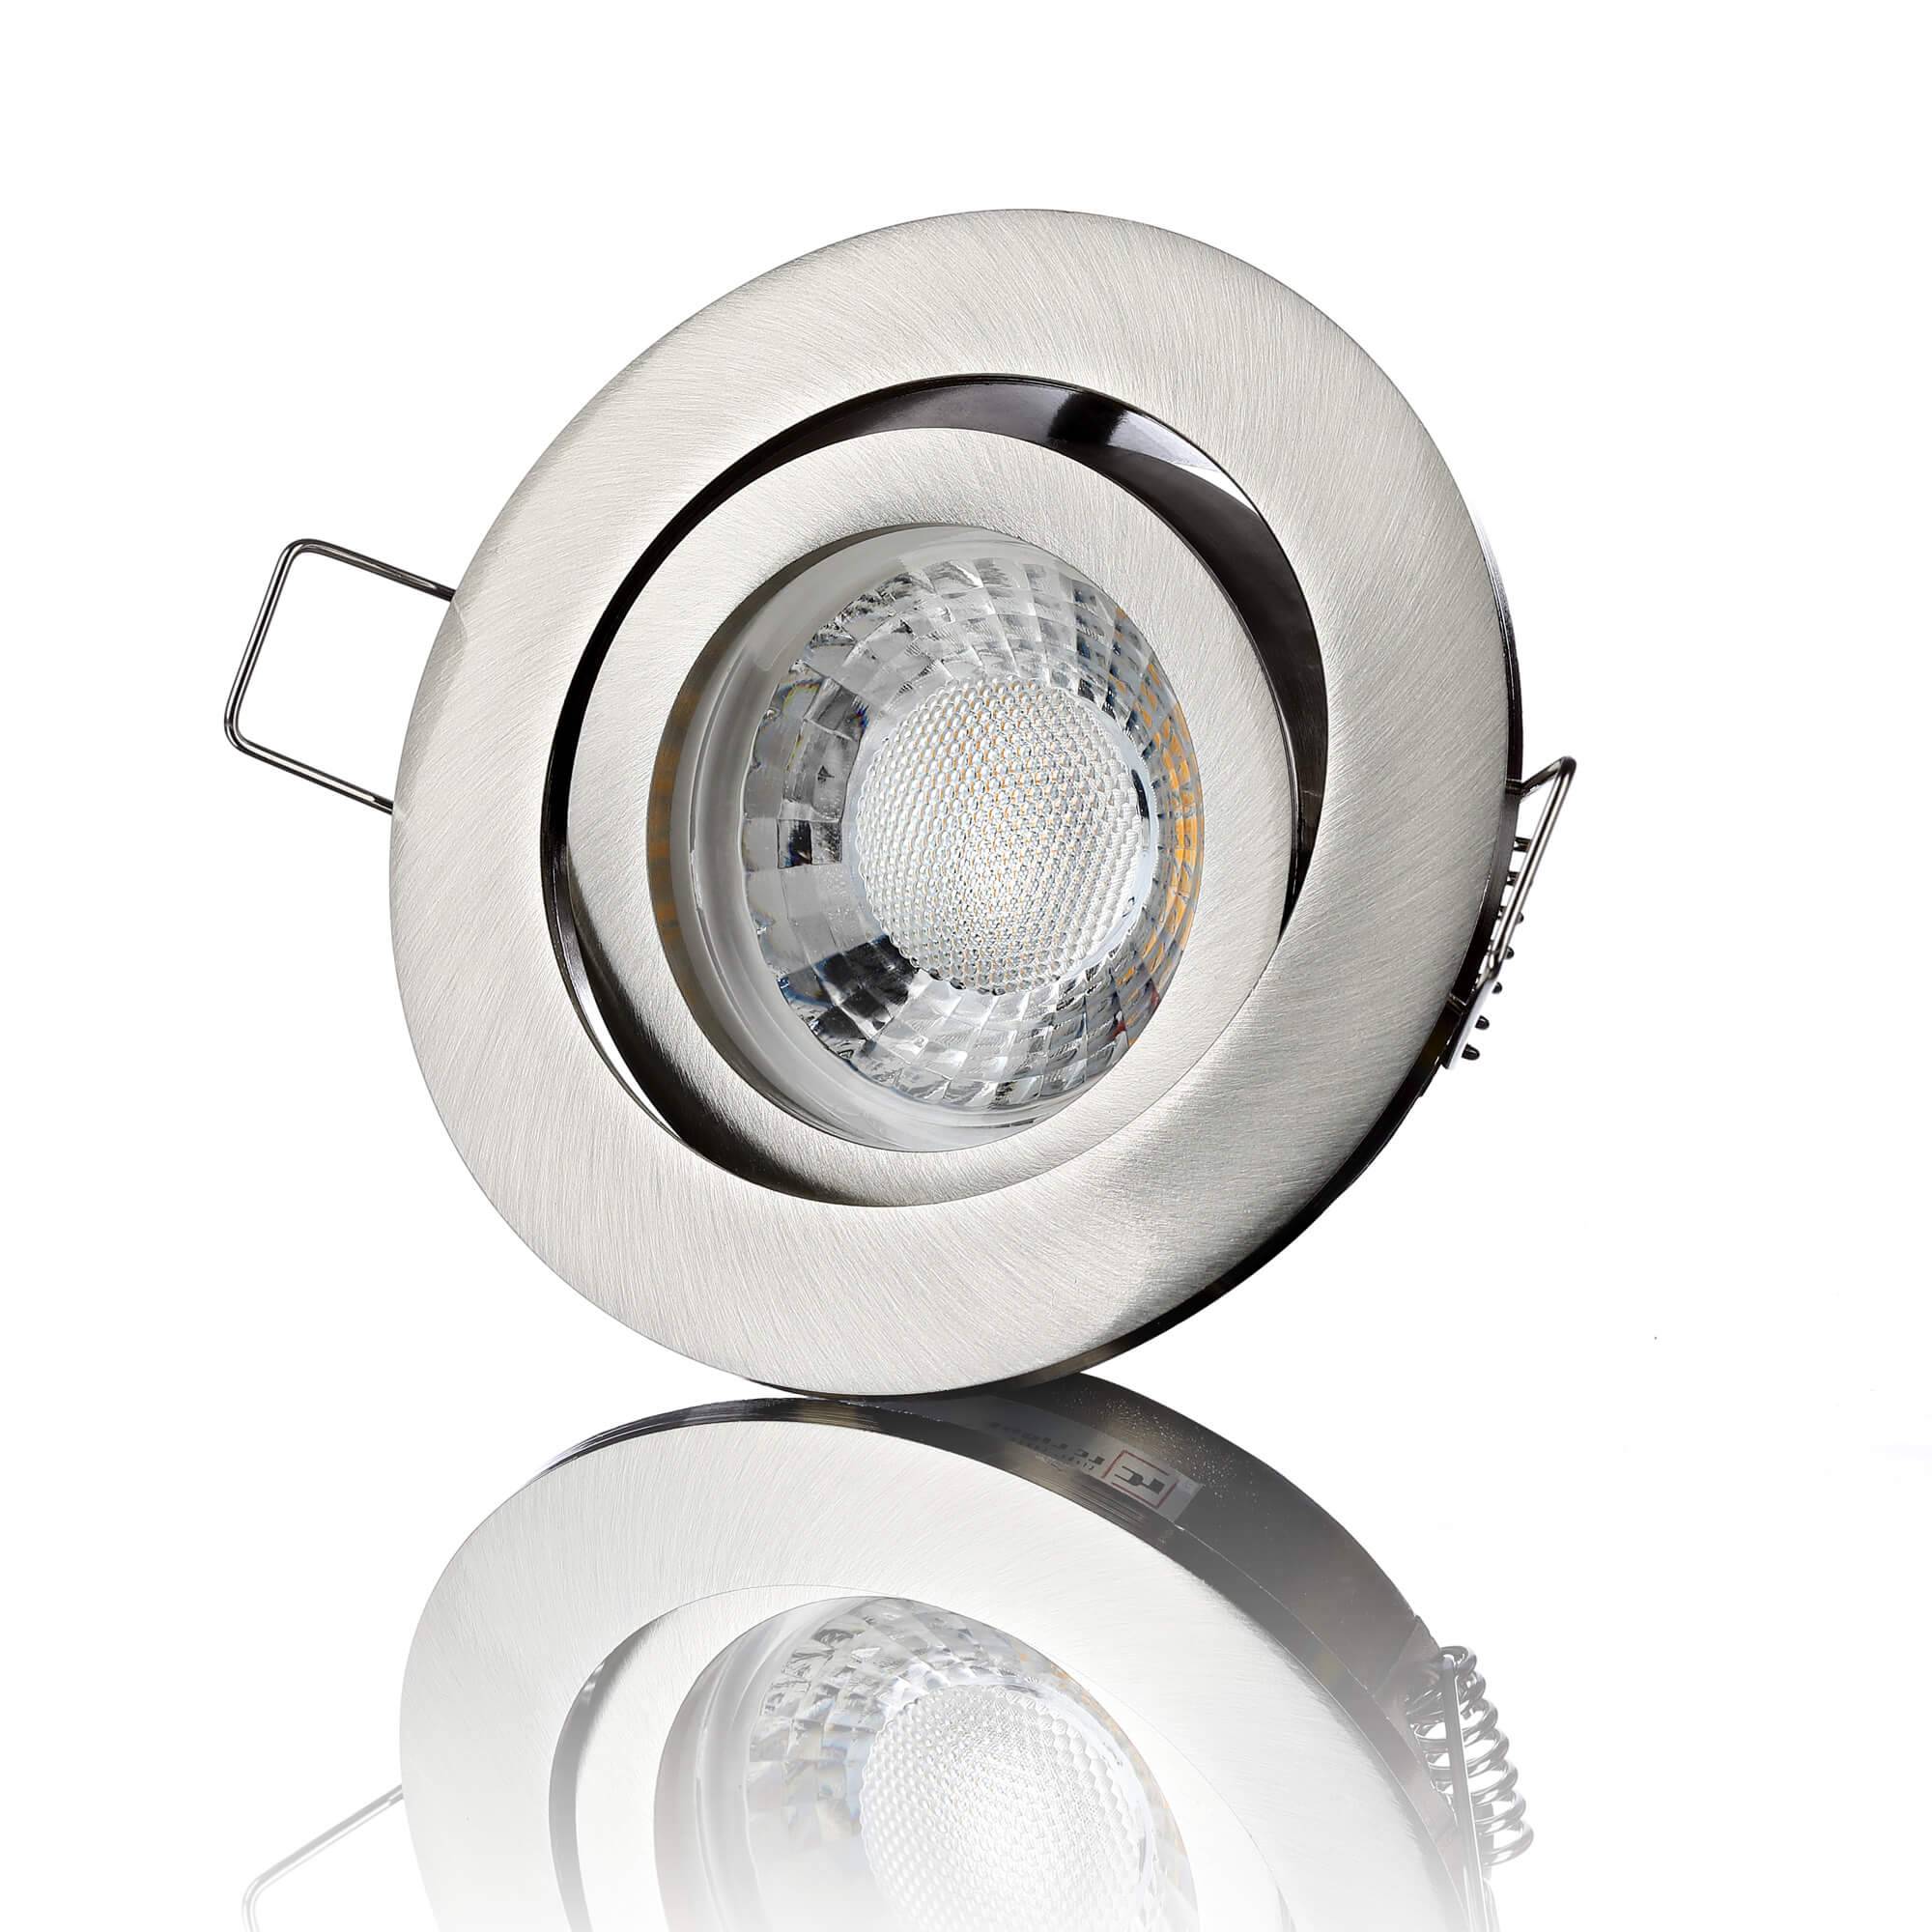 LED Einbaustrahler 230V - Edelstahl gebürstet Rund 5W GU10 LED - Rapid